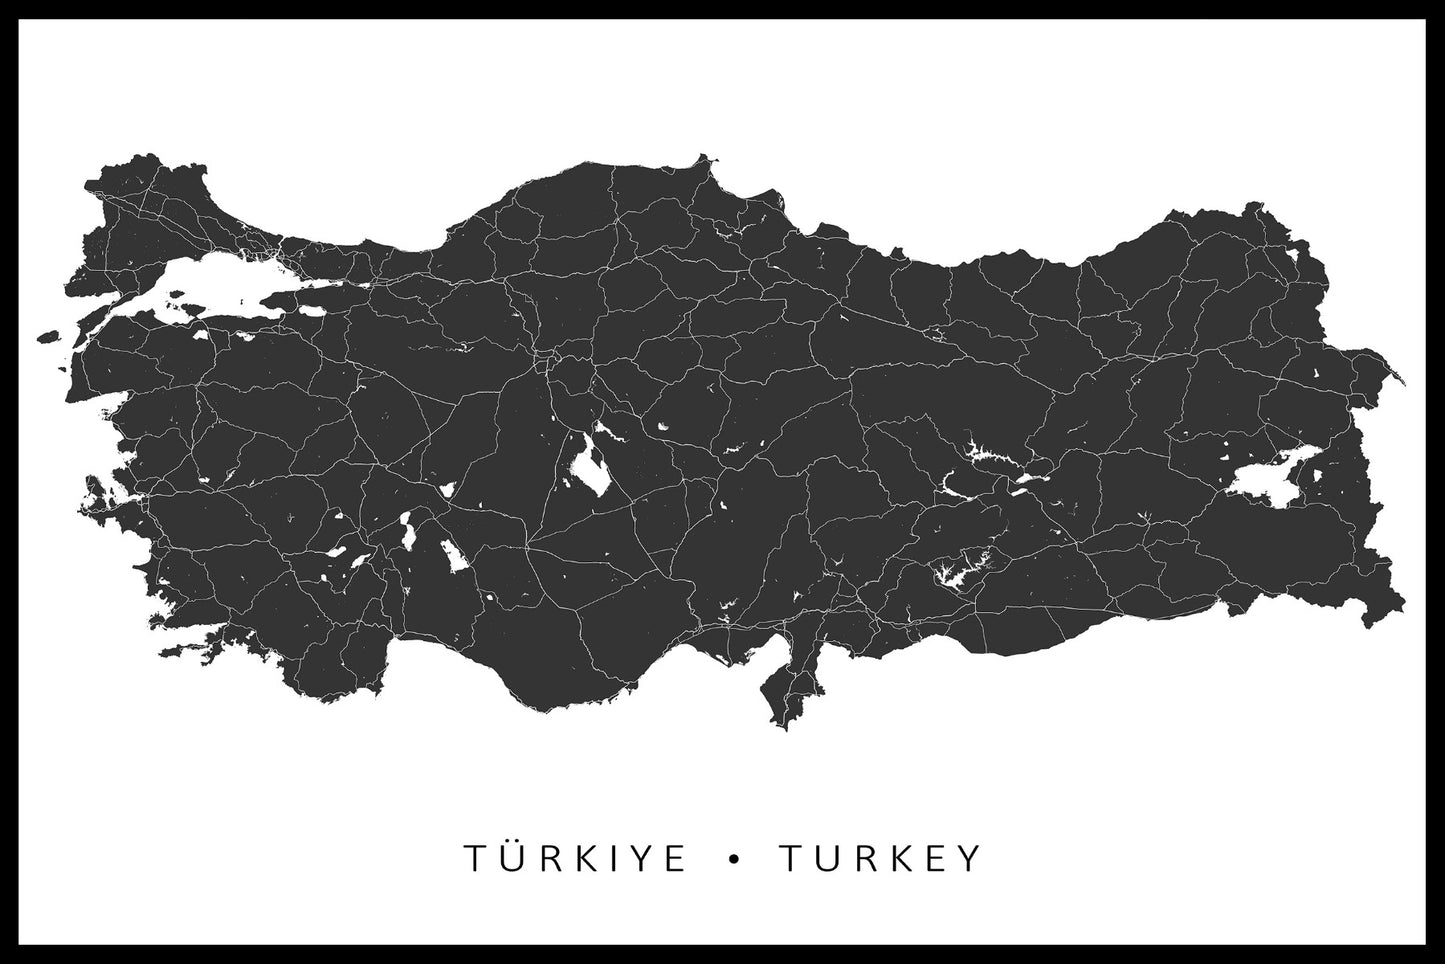  Kartenelemente der Türkei